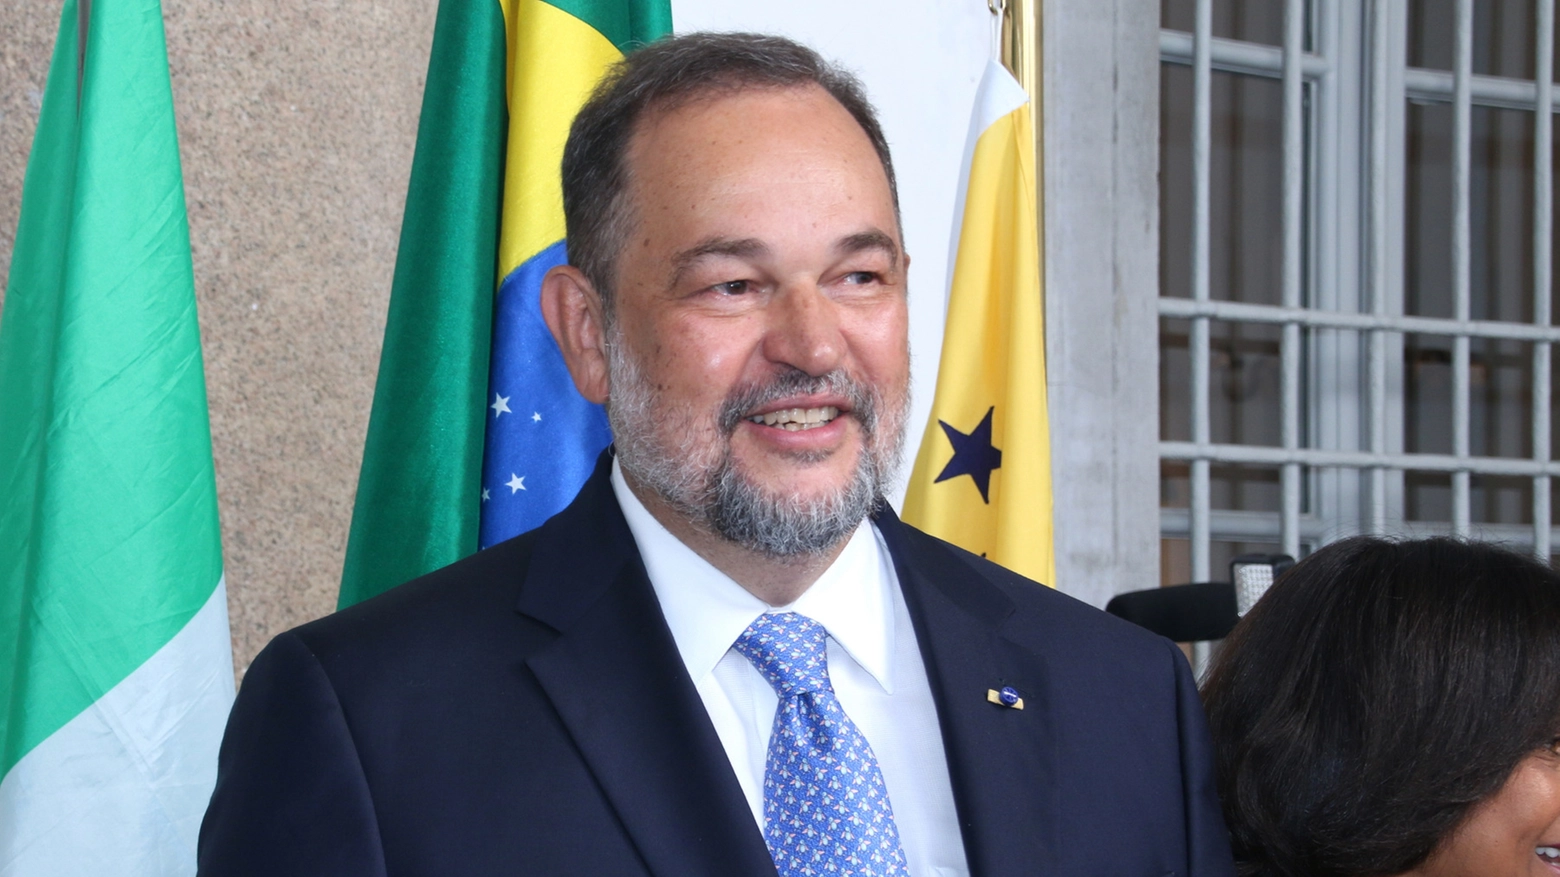 L’ambasciatore Paulo Cordeiro de Andrade Pinto, console generale del Brasile in Milano